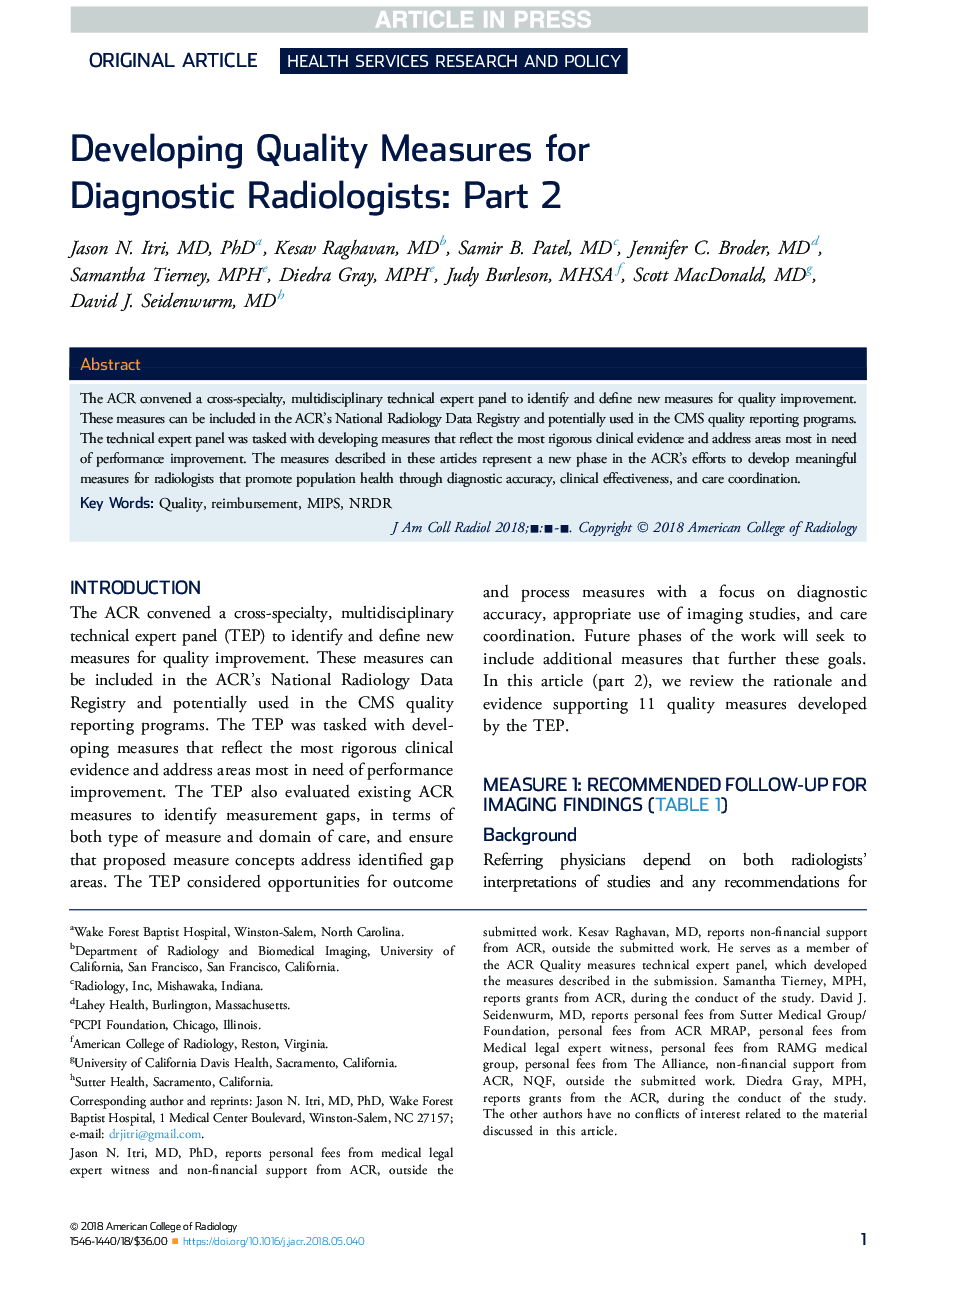 توسعه روش های کیفی برای رادیولوژیست های تشخیصی: قسمت 2